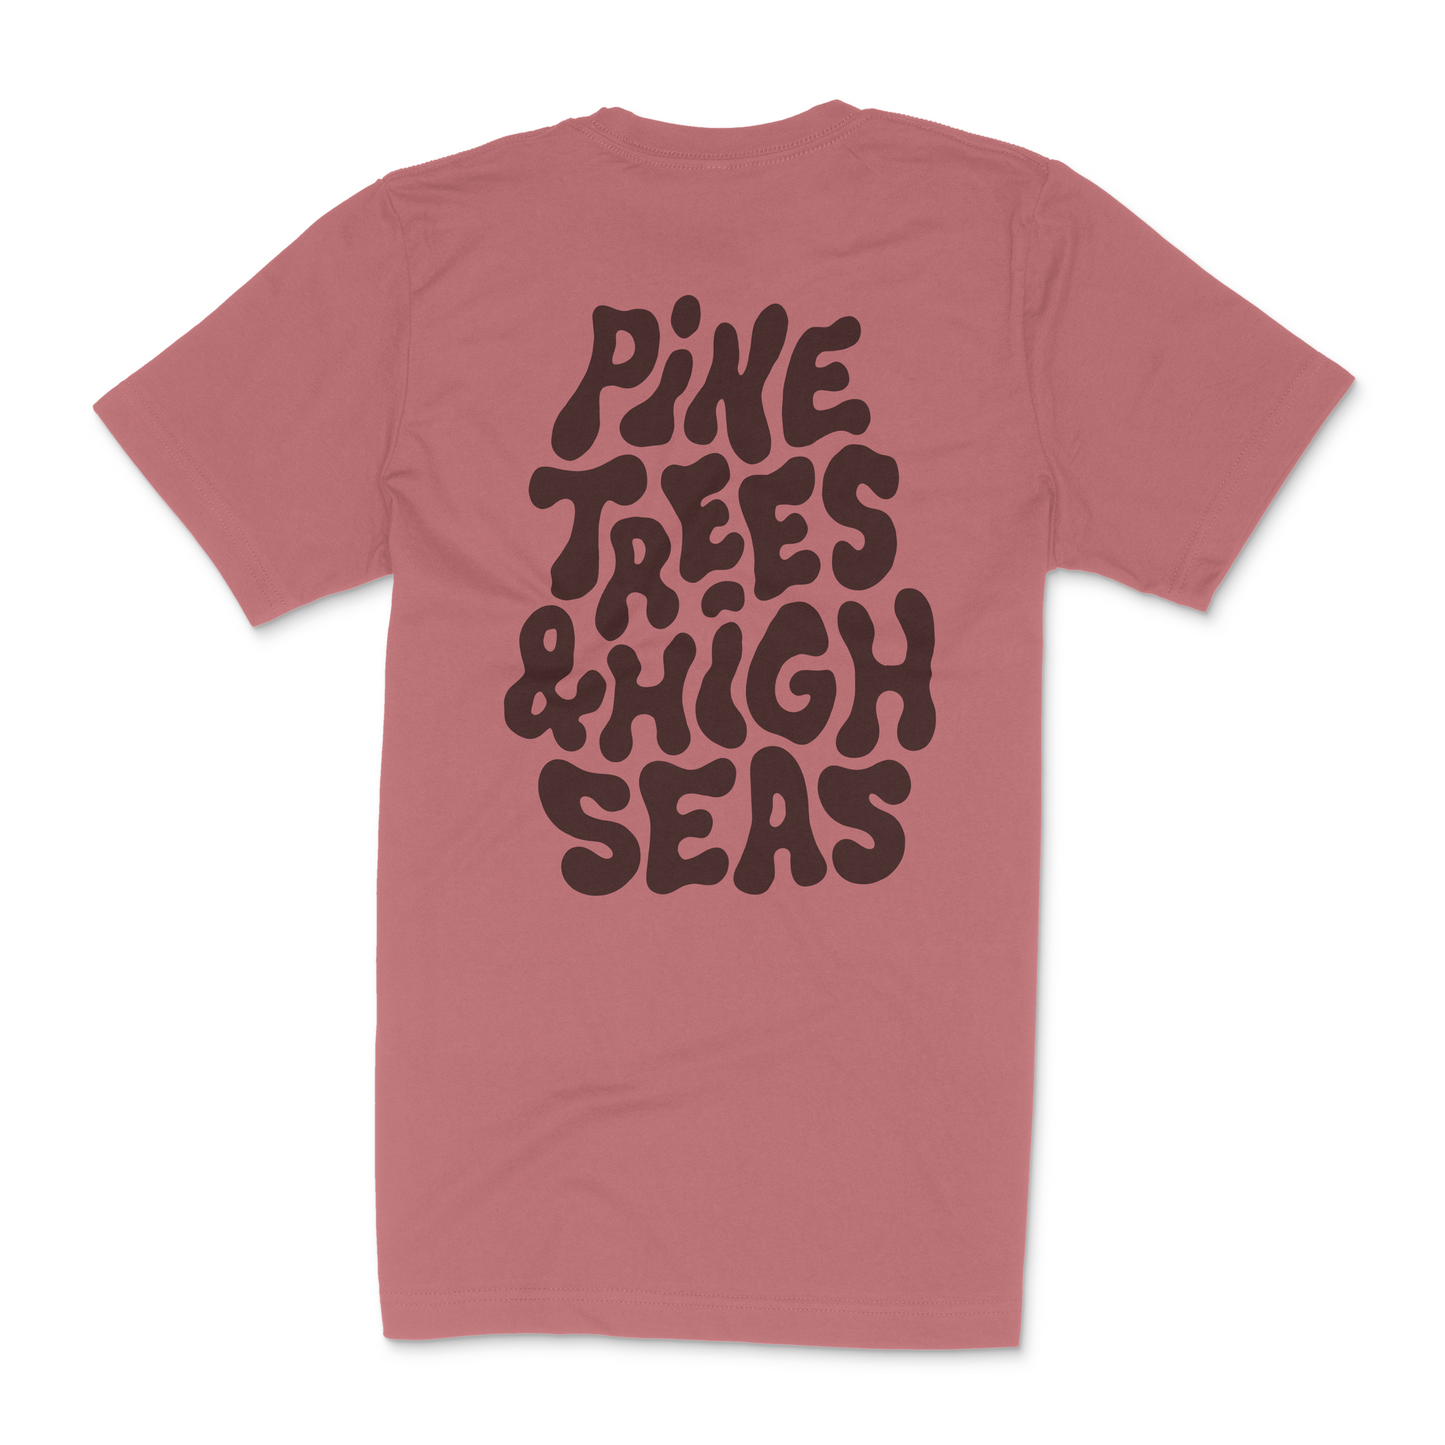 Pine Trees & High Seas Tee